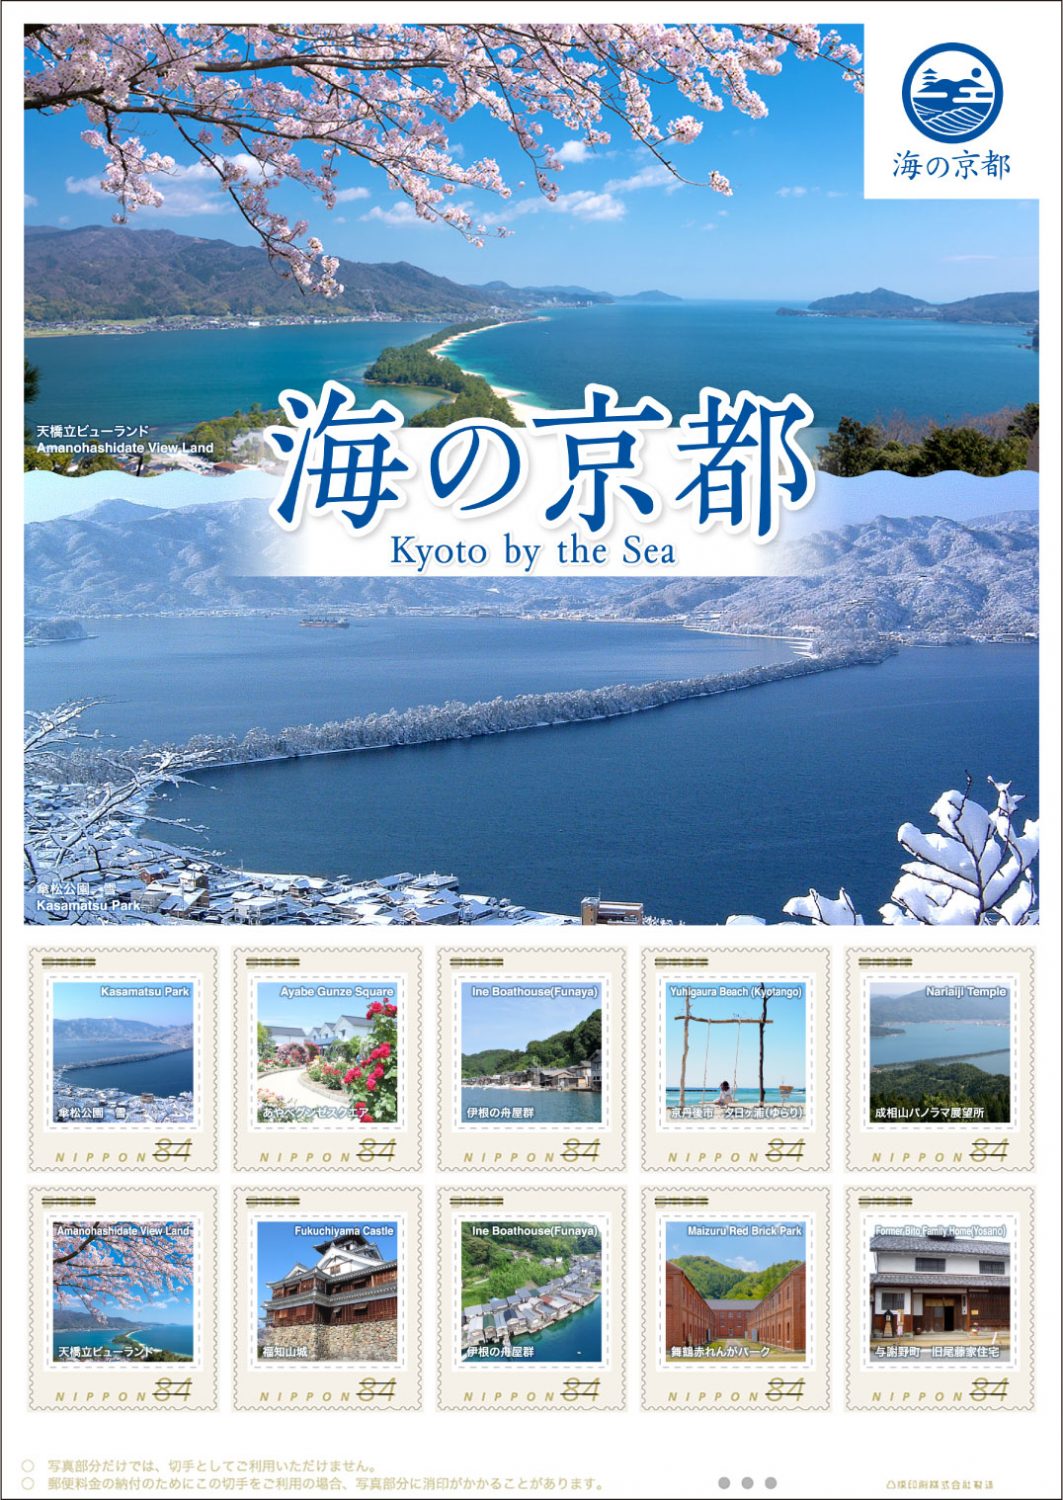 オリジナルフレーム切手「海の京都 Kyoto by the Sea」切手シートの販売開始 - 「京丹後ナビ」京丹後市観光公社 公式サイト